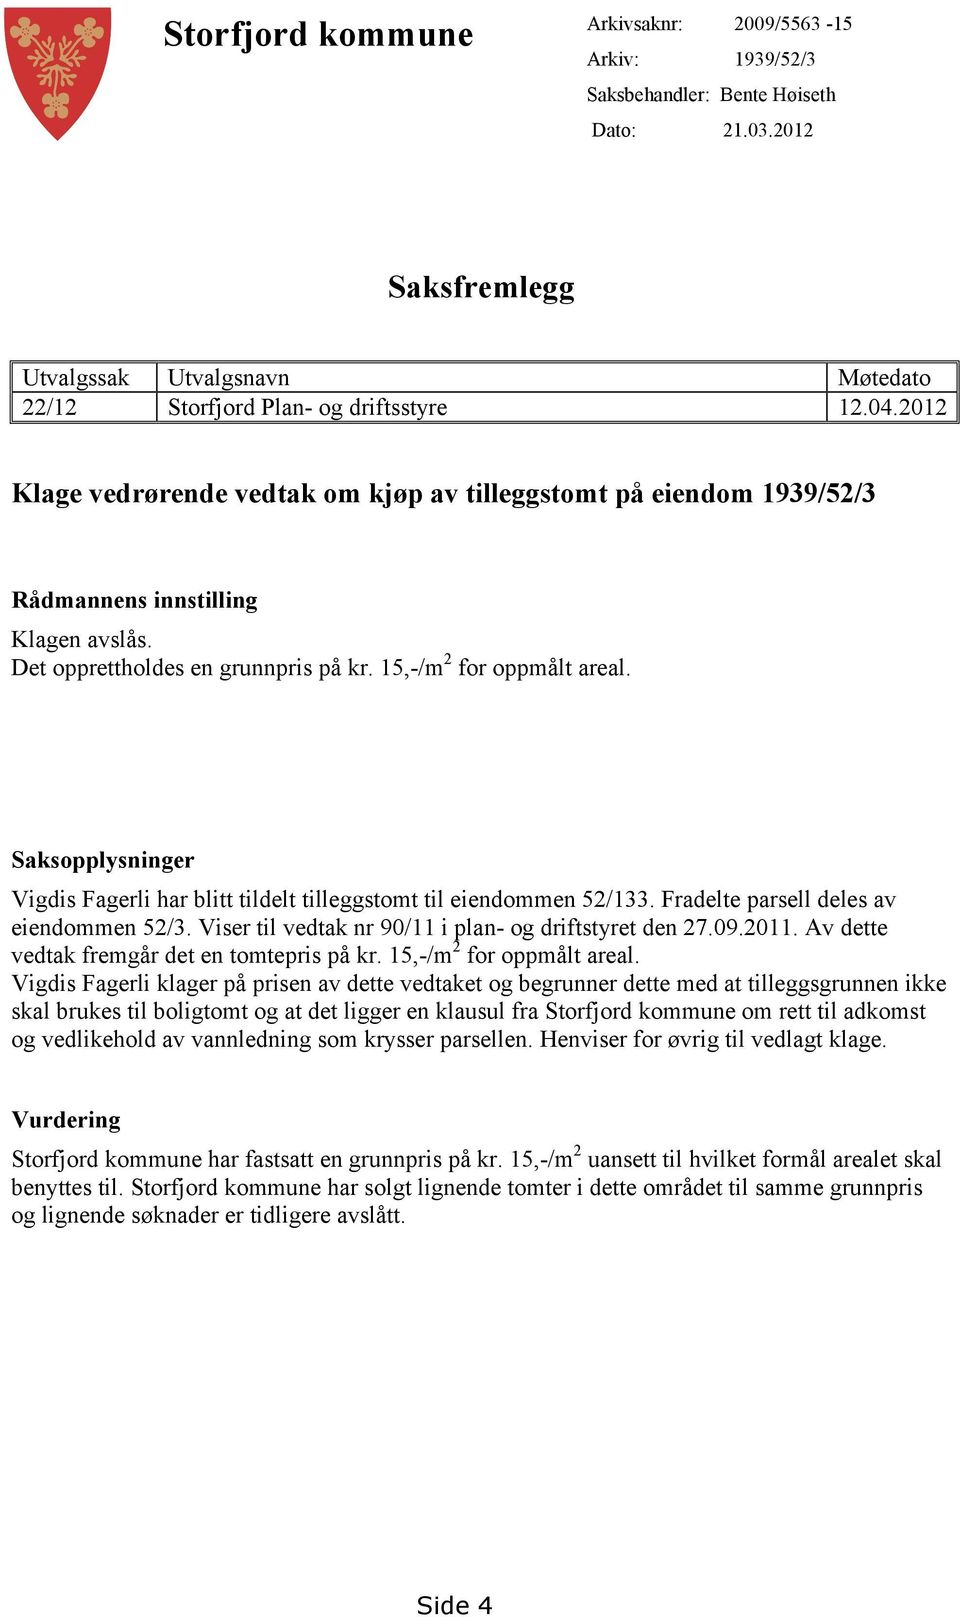 Saksopplysninger Vigdis Fagerli har blitt tildelt tilleggstomt til eiendommen 52/133. Fradelte parsell deles av eiendommen 52/3. Viser til vedtak nr 90/11 i plan- og driftstyret den 27.09.2011.